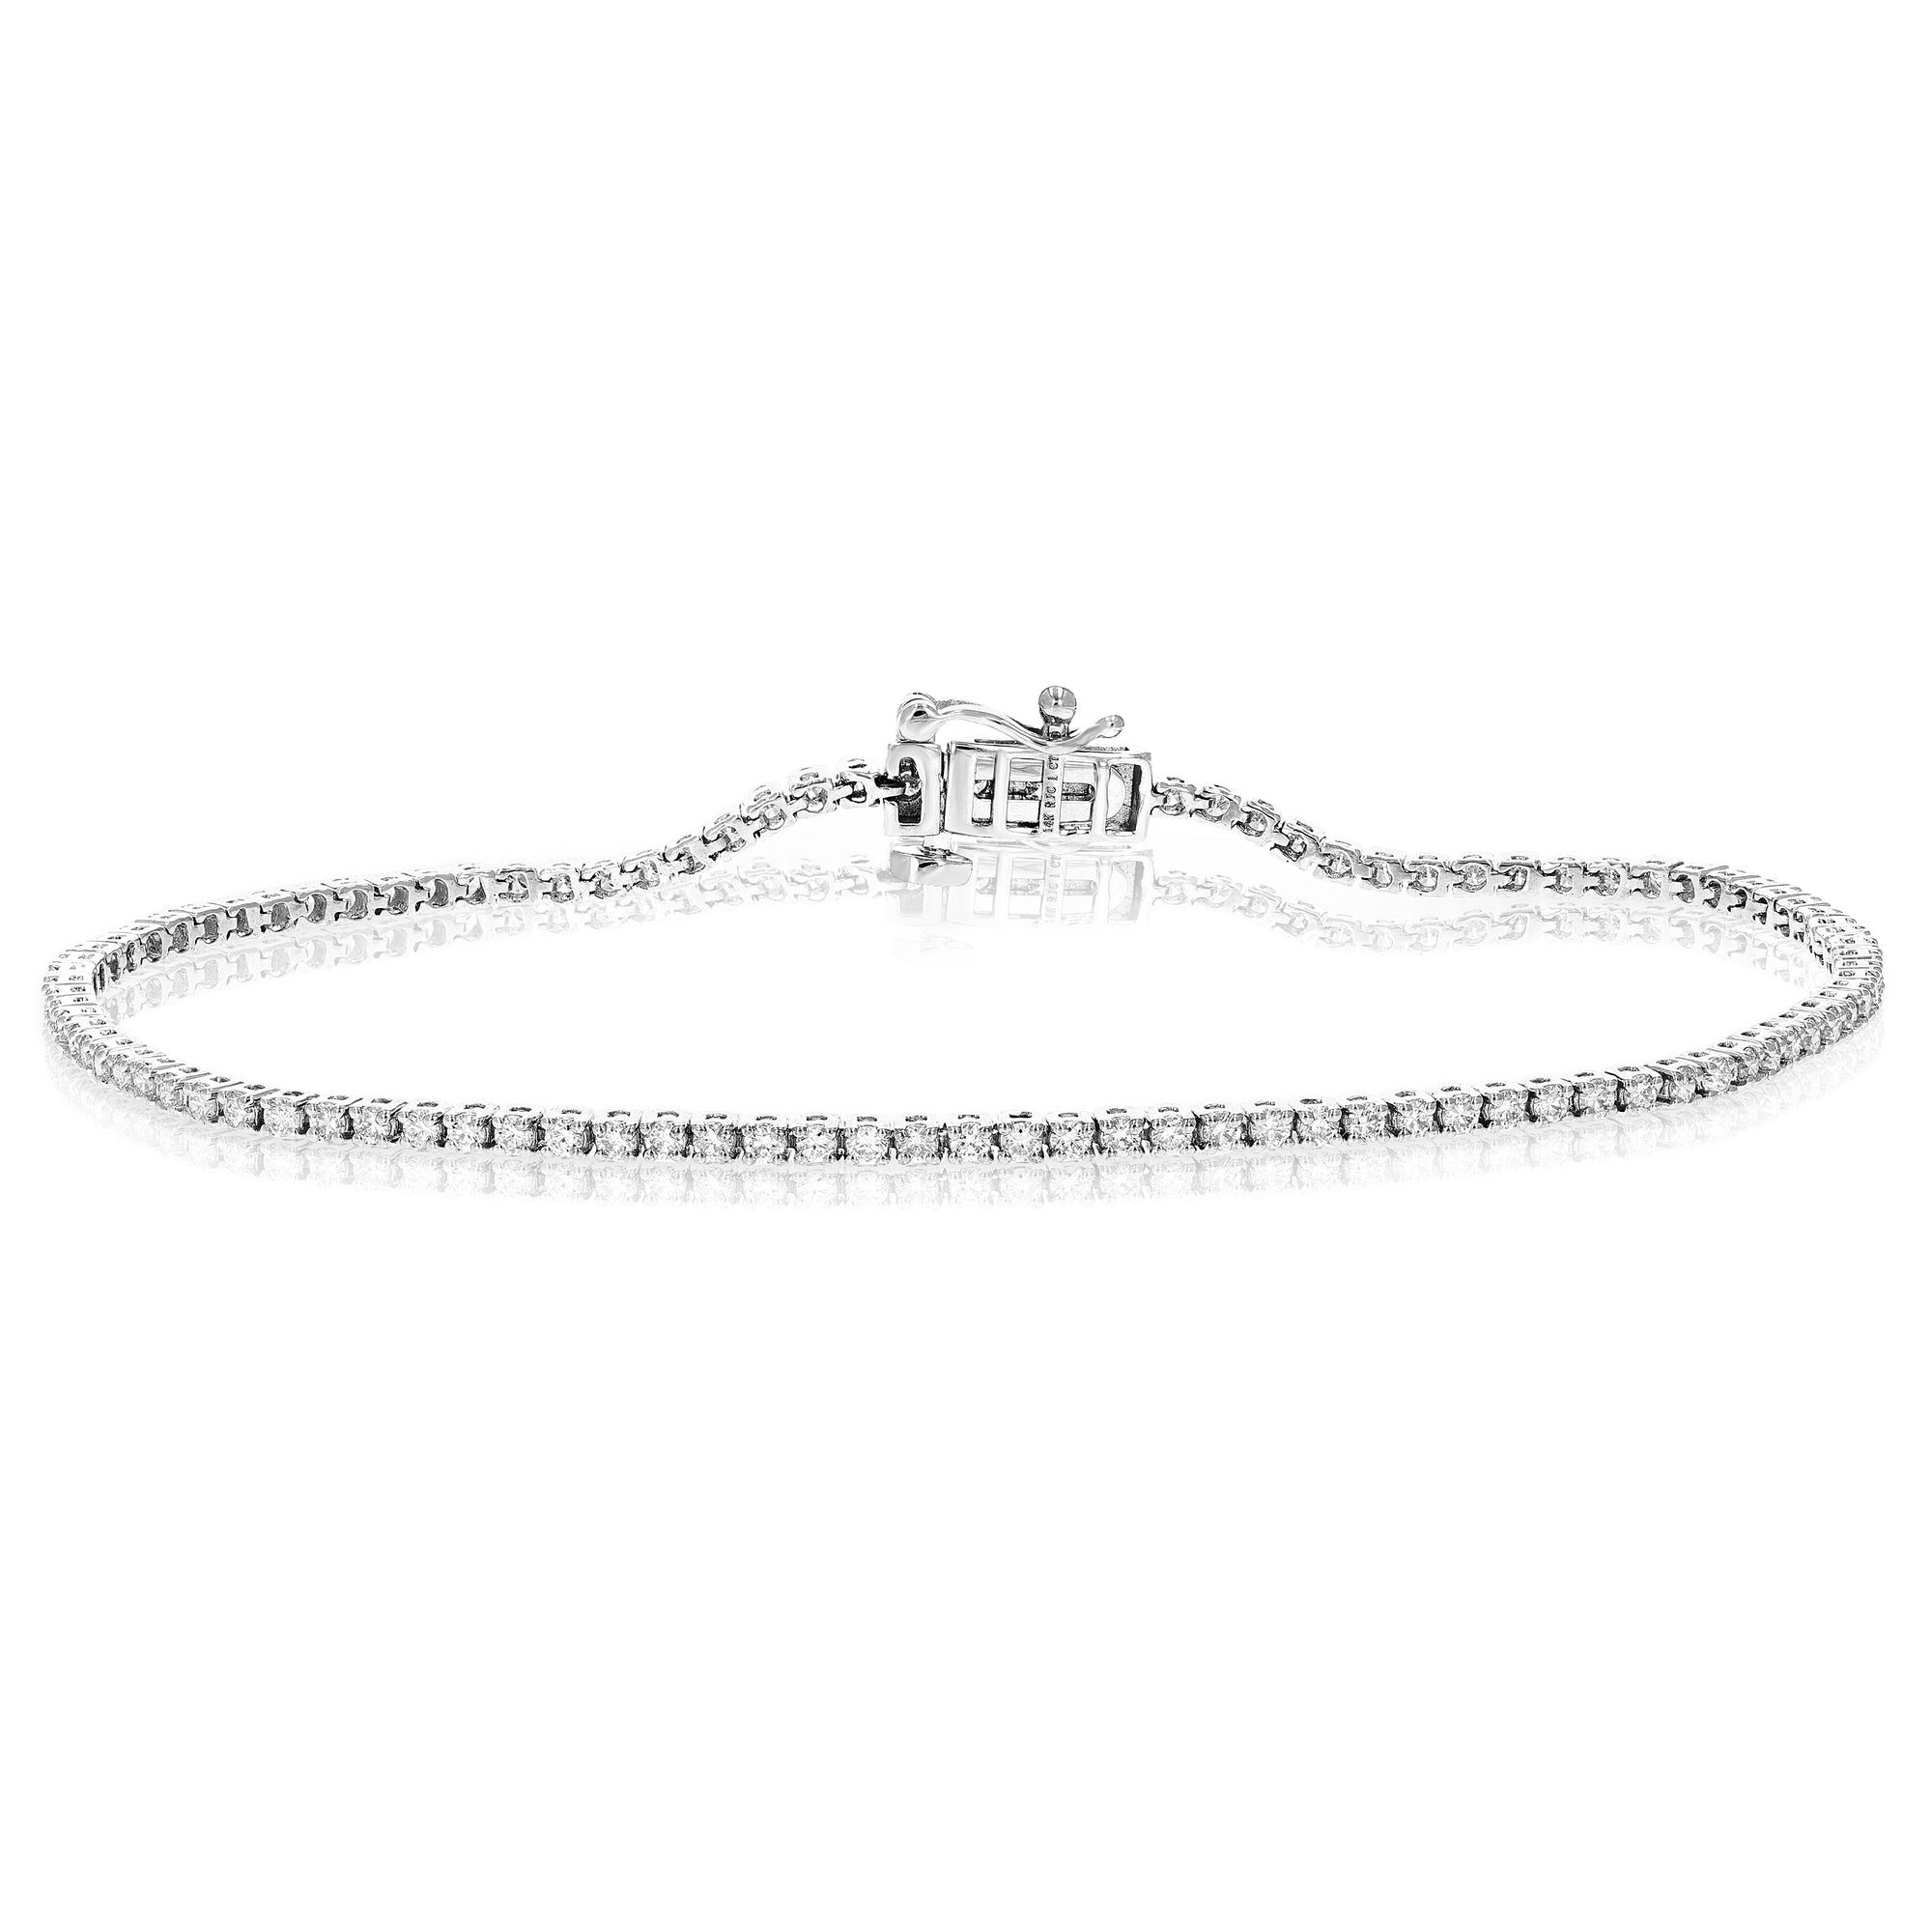 1 cttw Diamond Bracelet for Women, Round Lab Grown Diamond Bracelet 14K White Gold in Prong Setting, 7 Inch